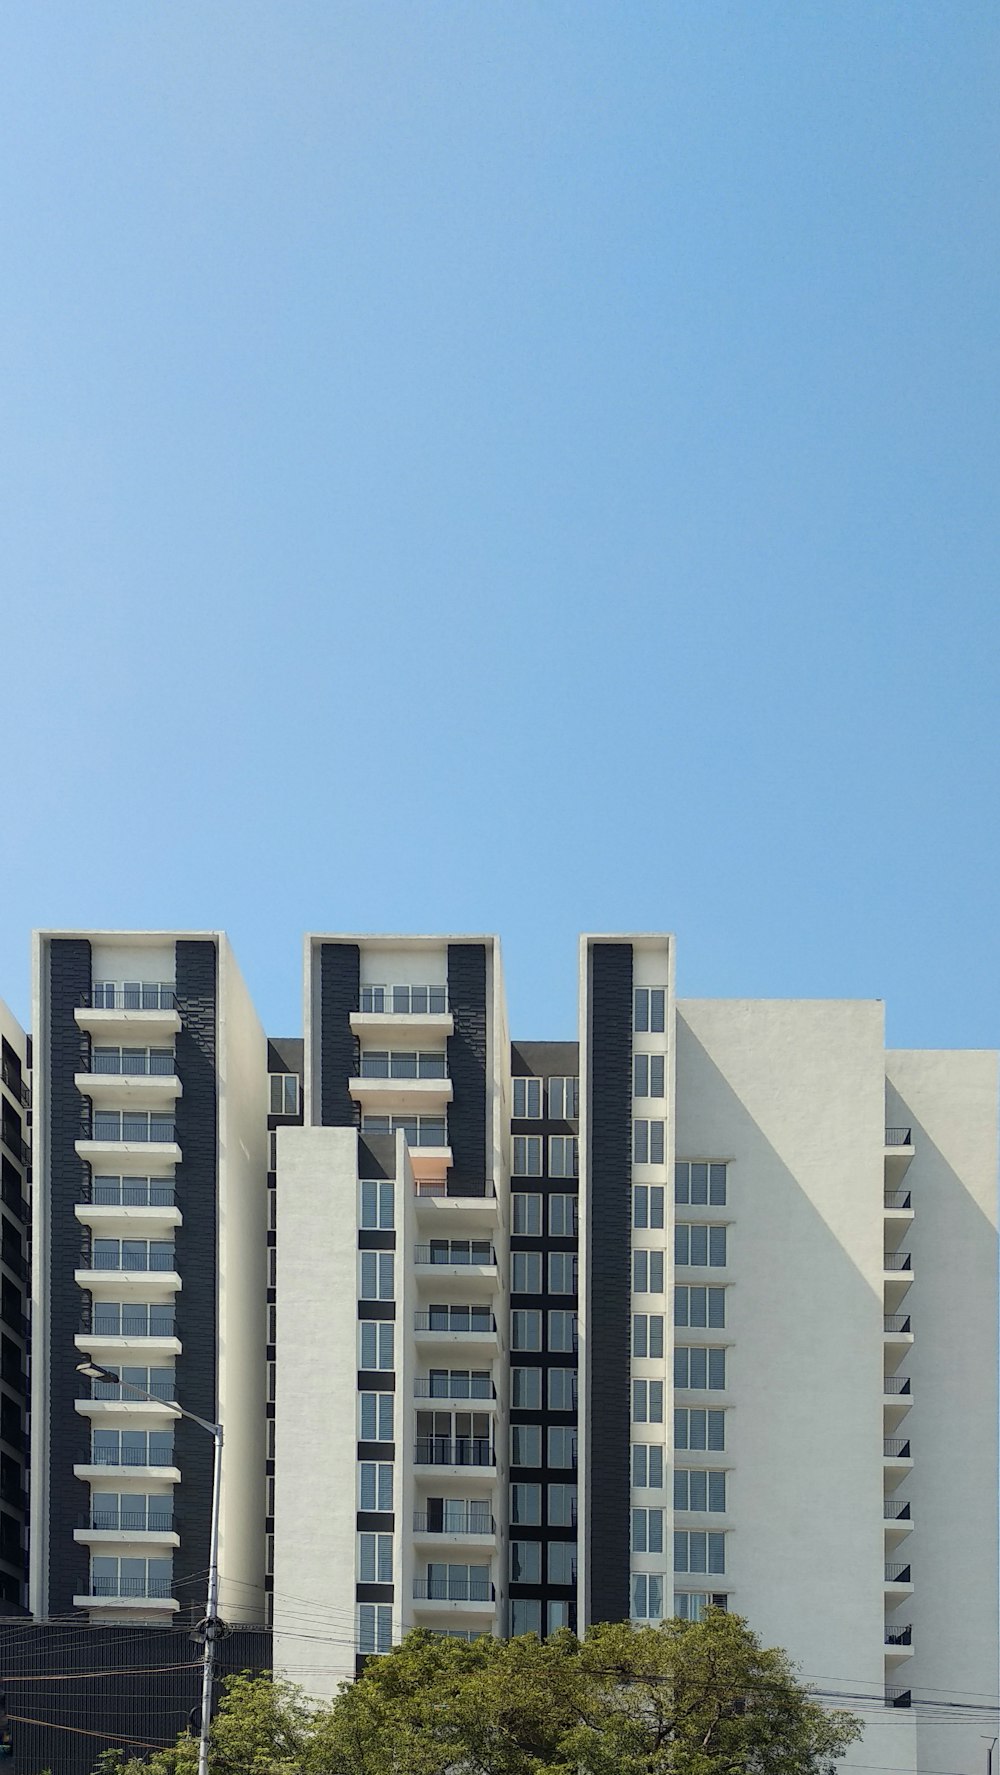 edifício de concreto branco sob o céu azul durante o dia